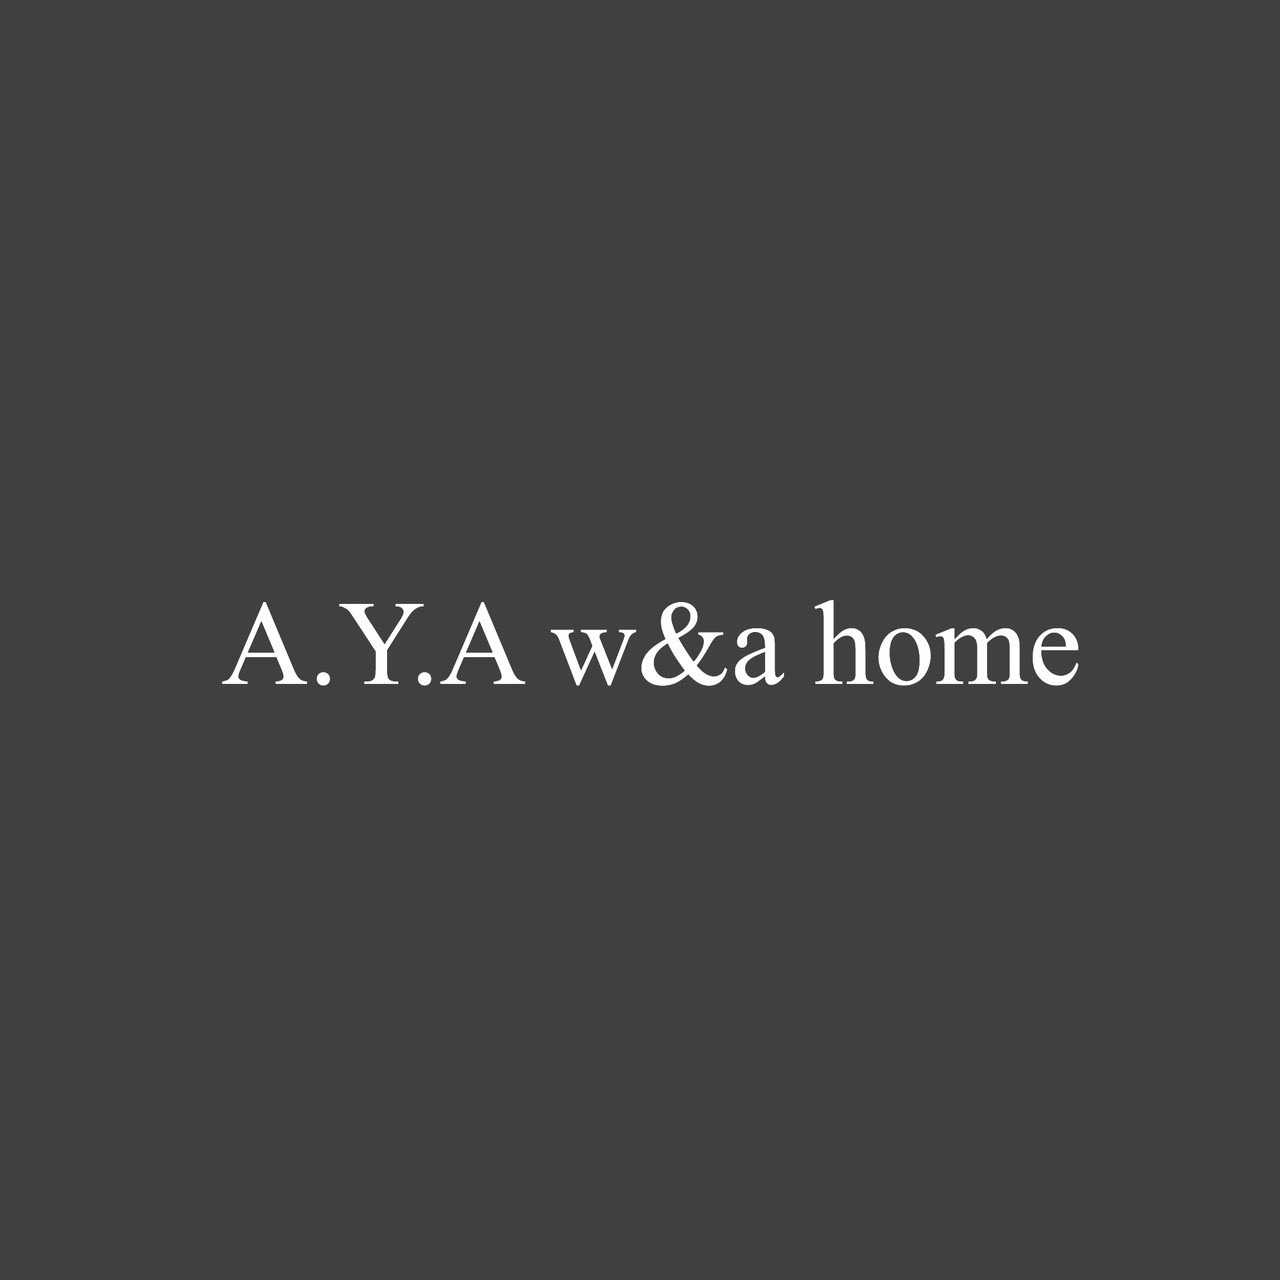 A.Y.A w&a home